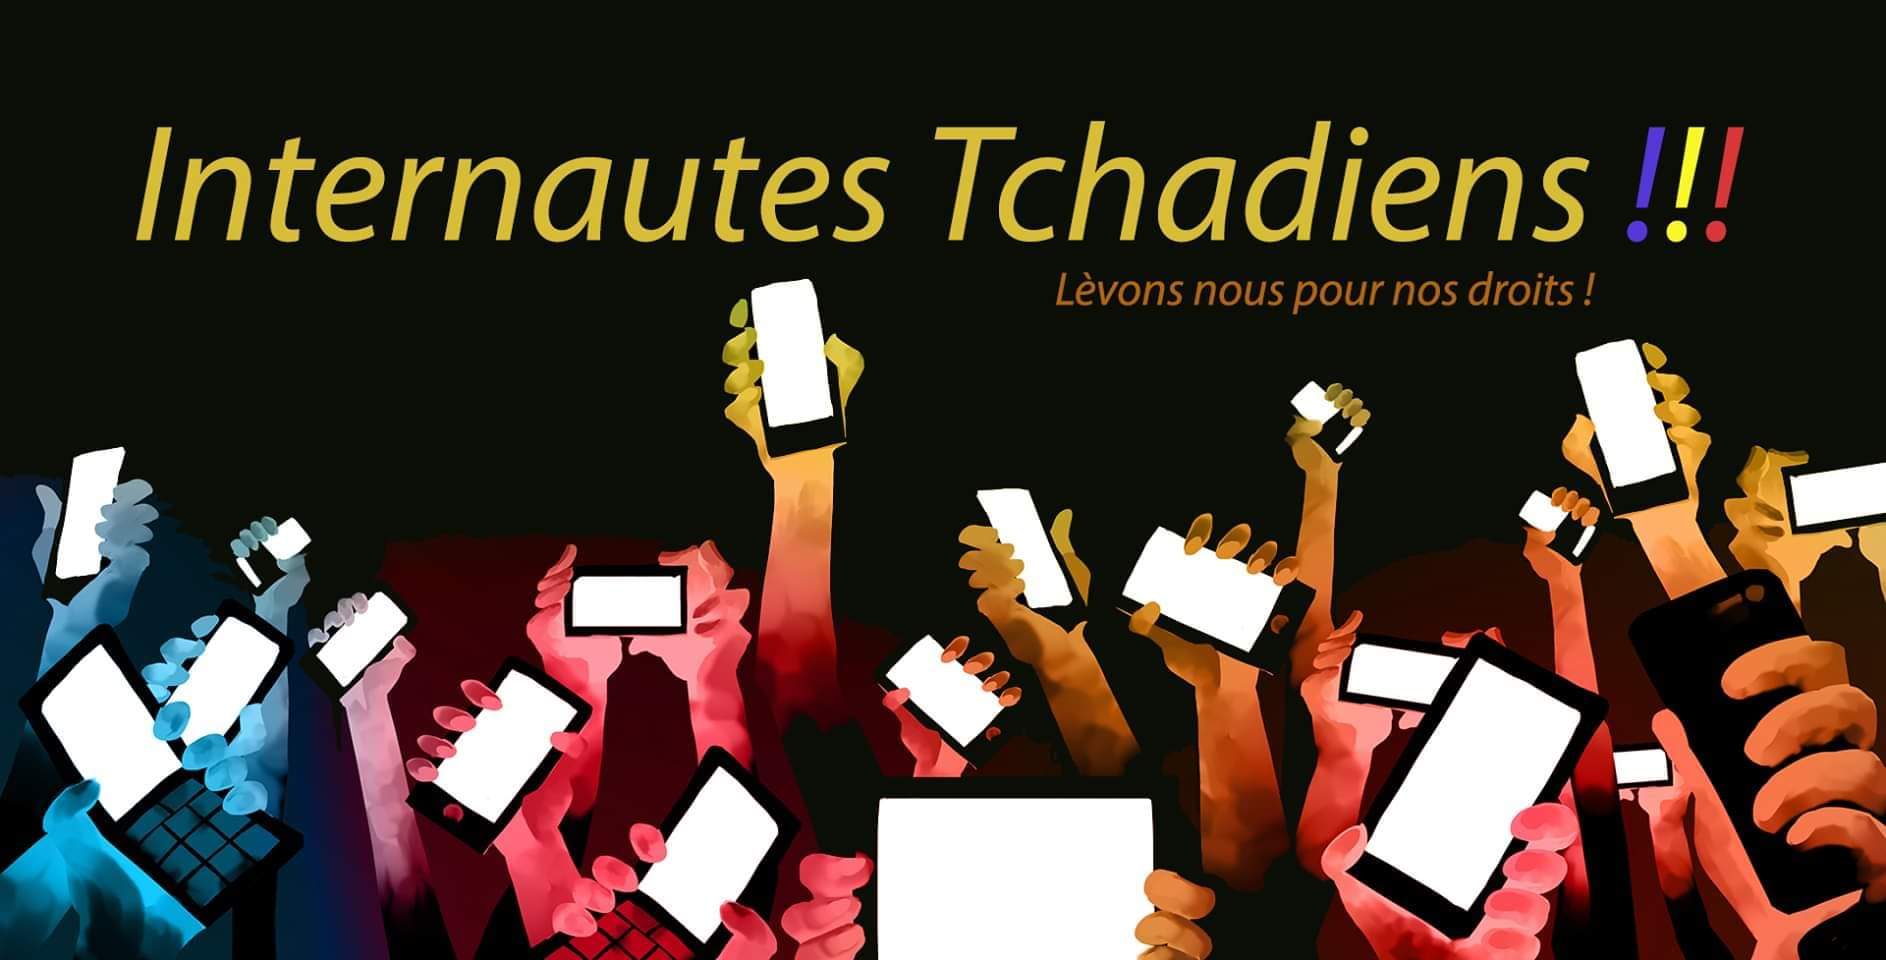 Tchad : Internet Sans Frontières lance une campagne de mobilisation internationale contre la censure d’Internet